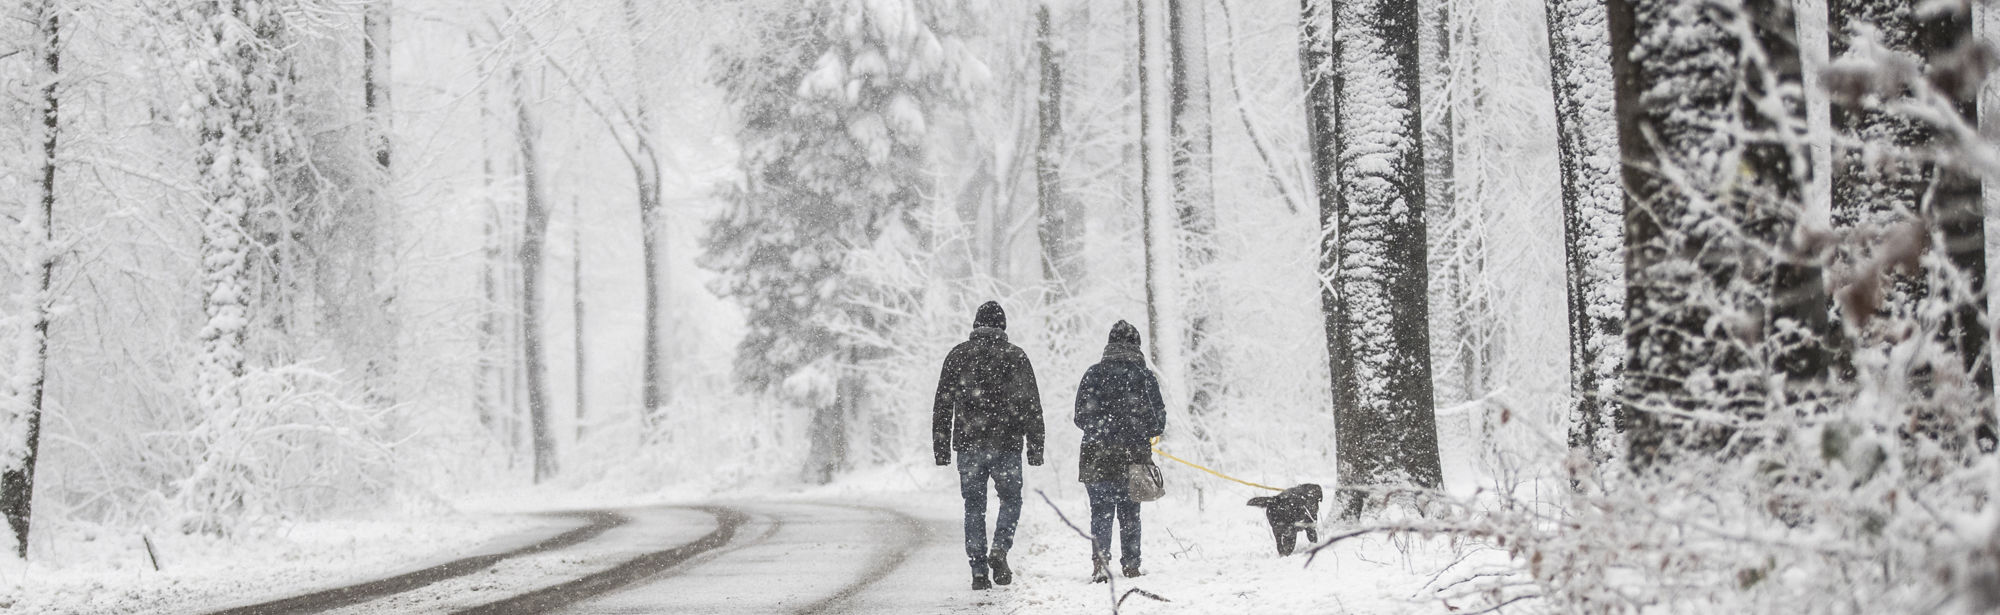 Twee wandelaars wandelen in een sneeuwbui door een wit bos